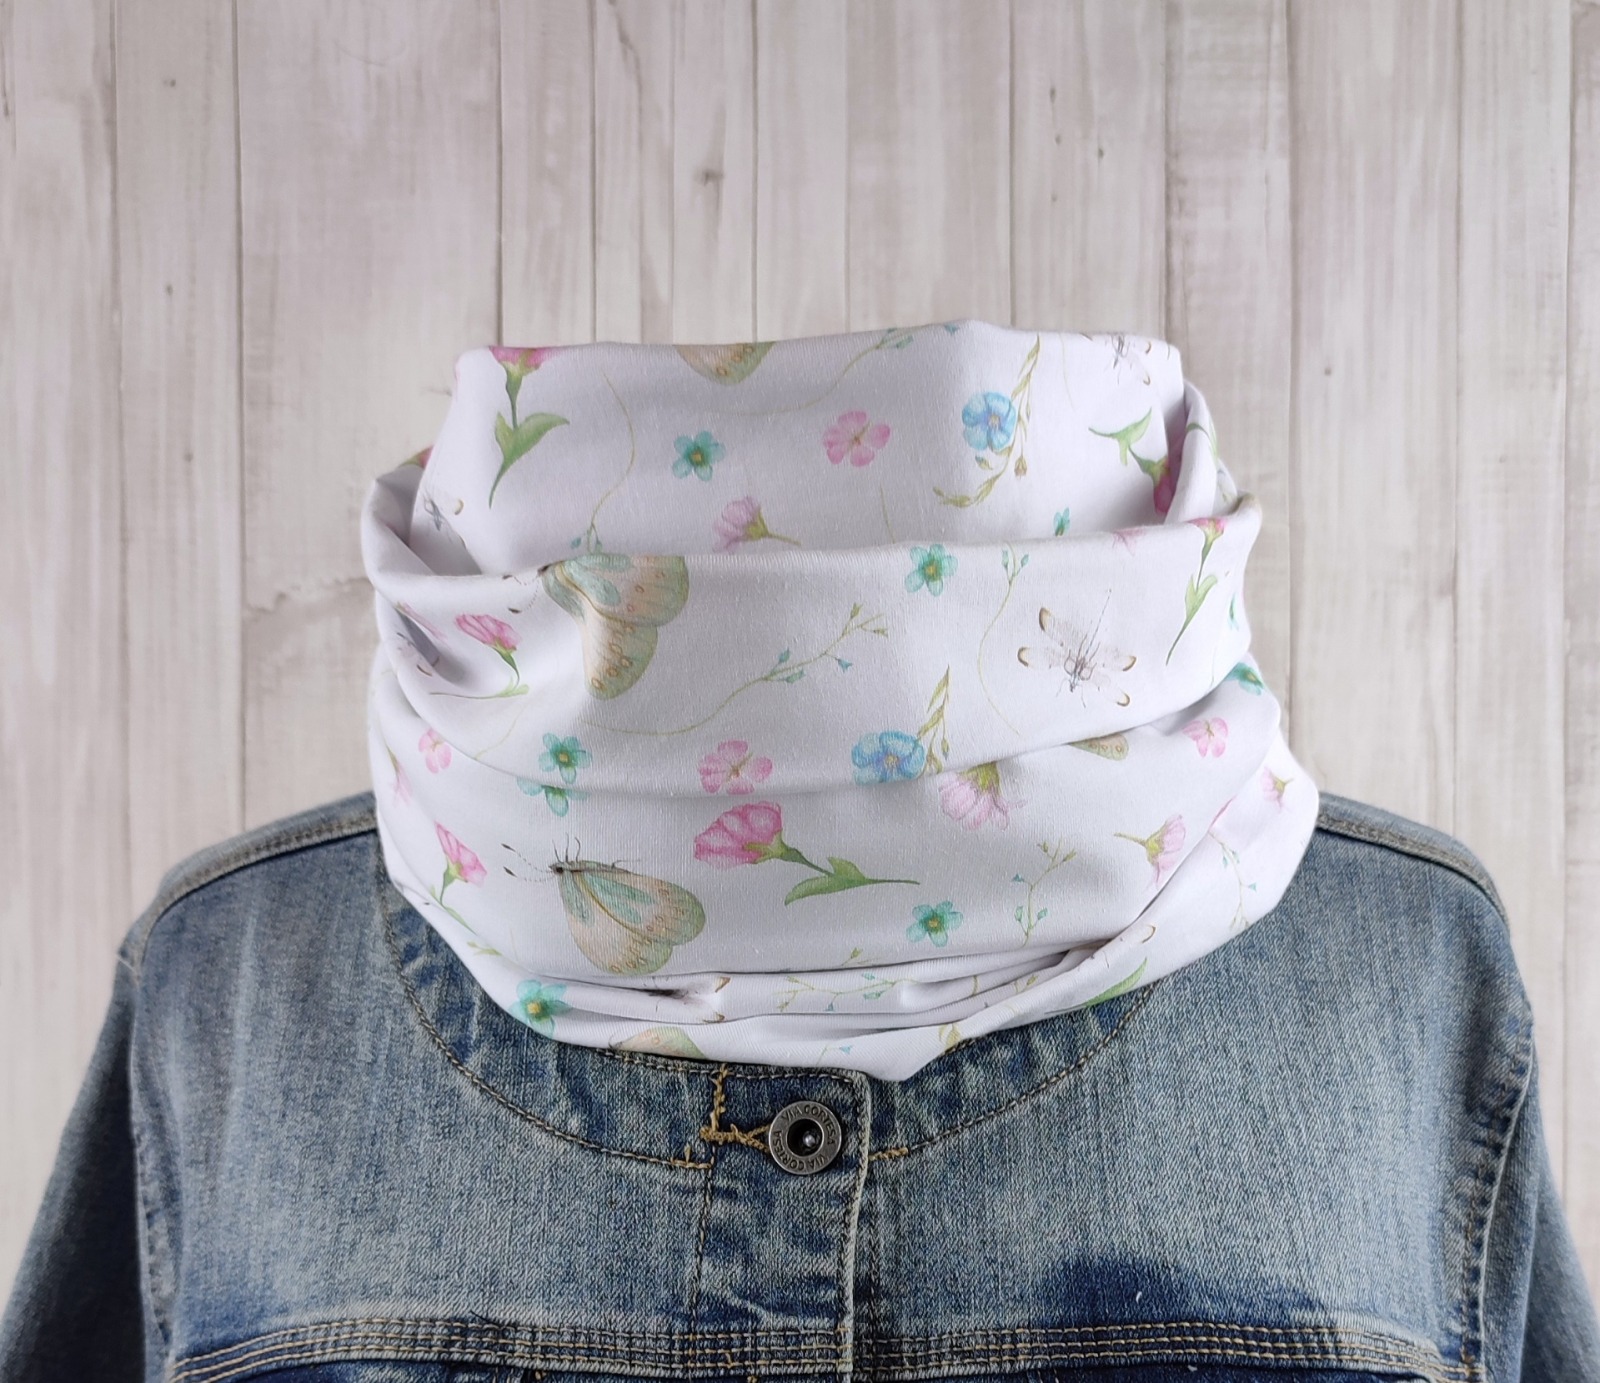 Loop Schlauchschal in weiß mit ganz zarten Blumen und Schmetterlingen in rosa und hellblau - Schal